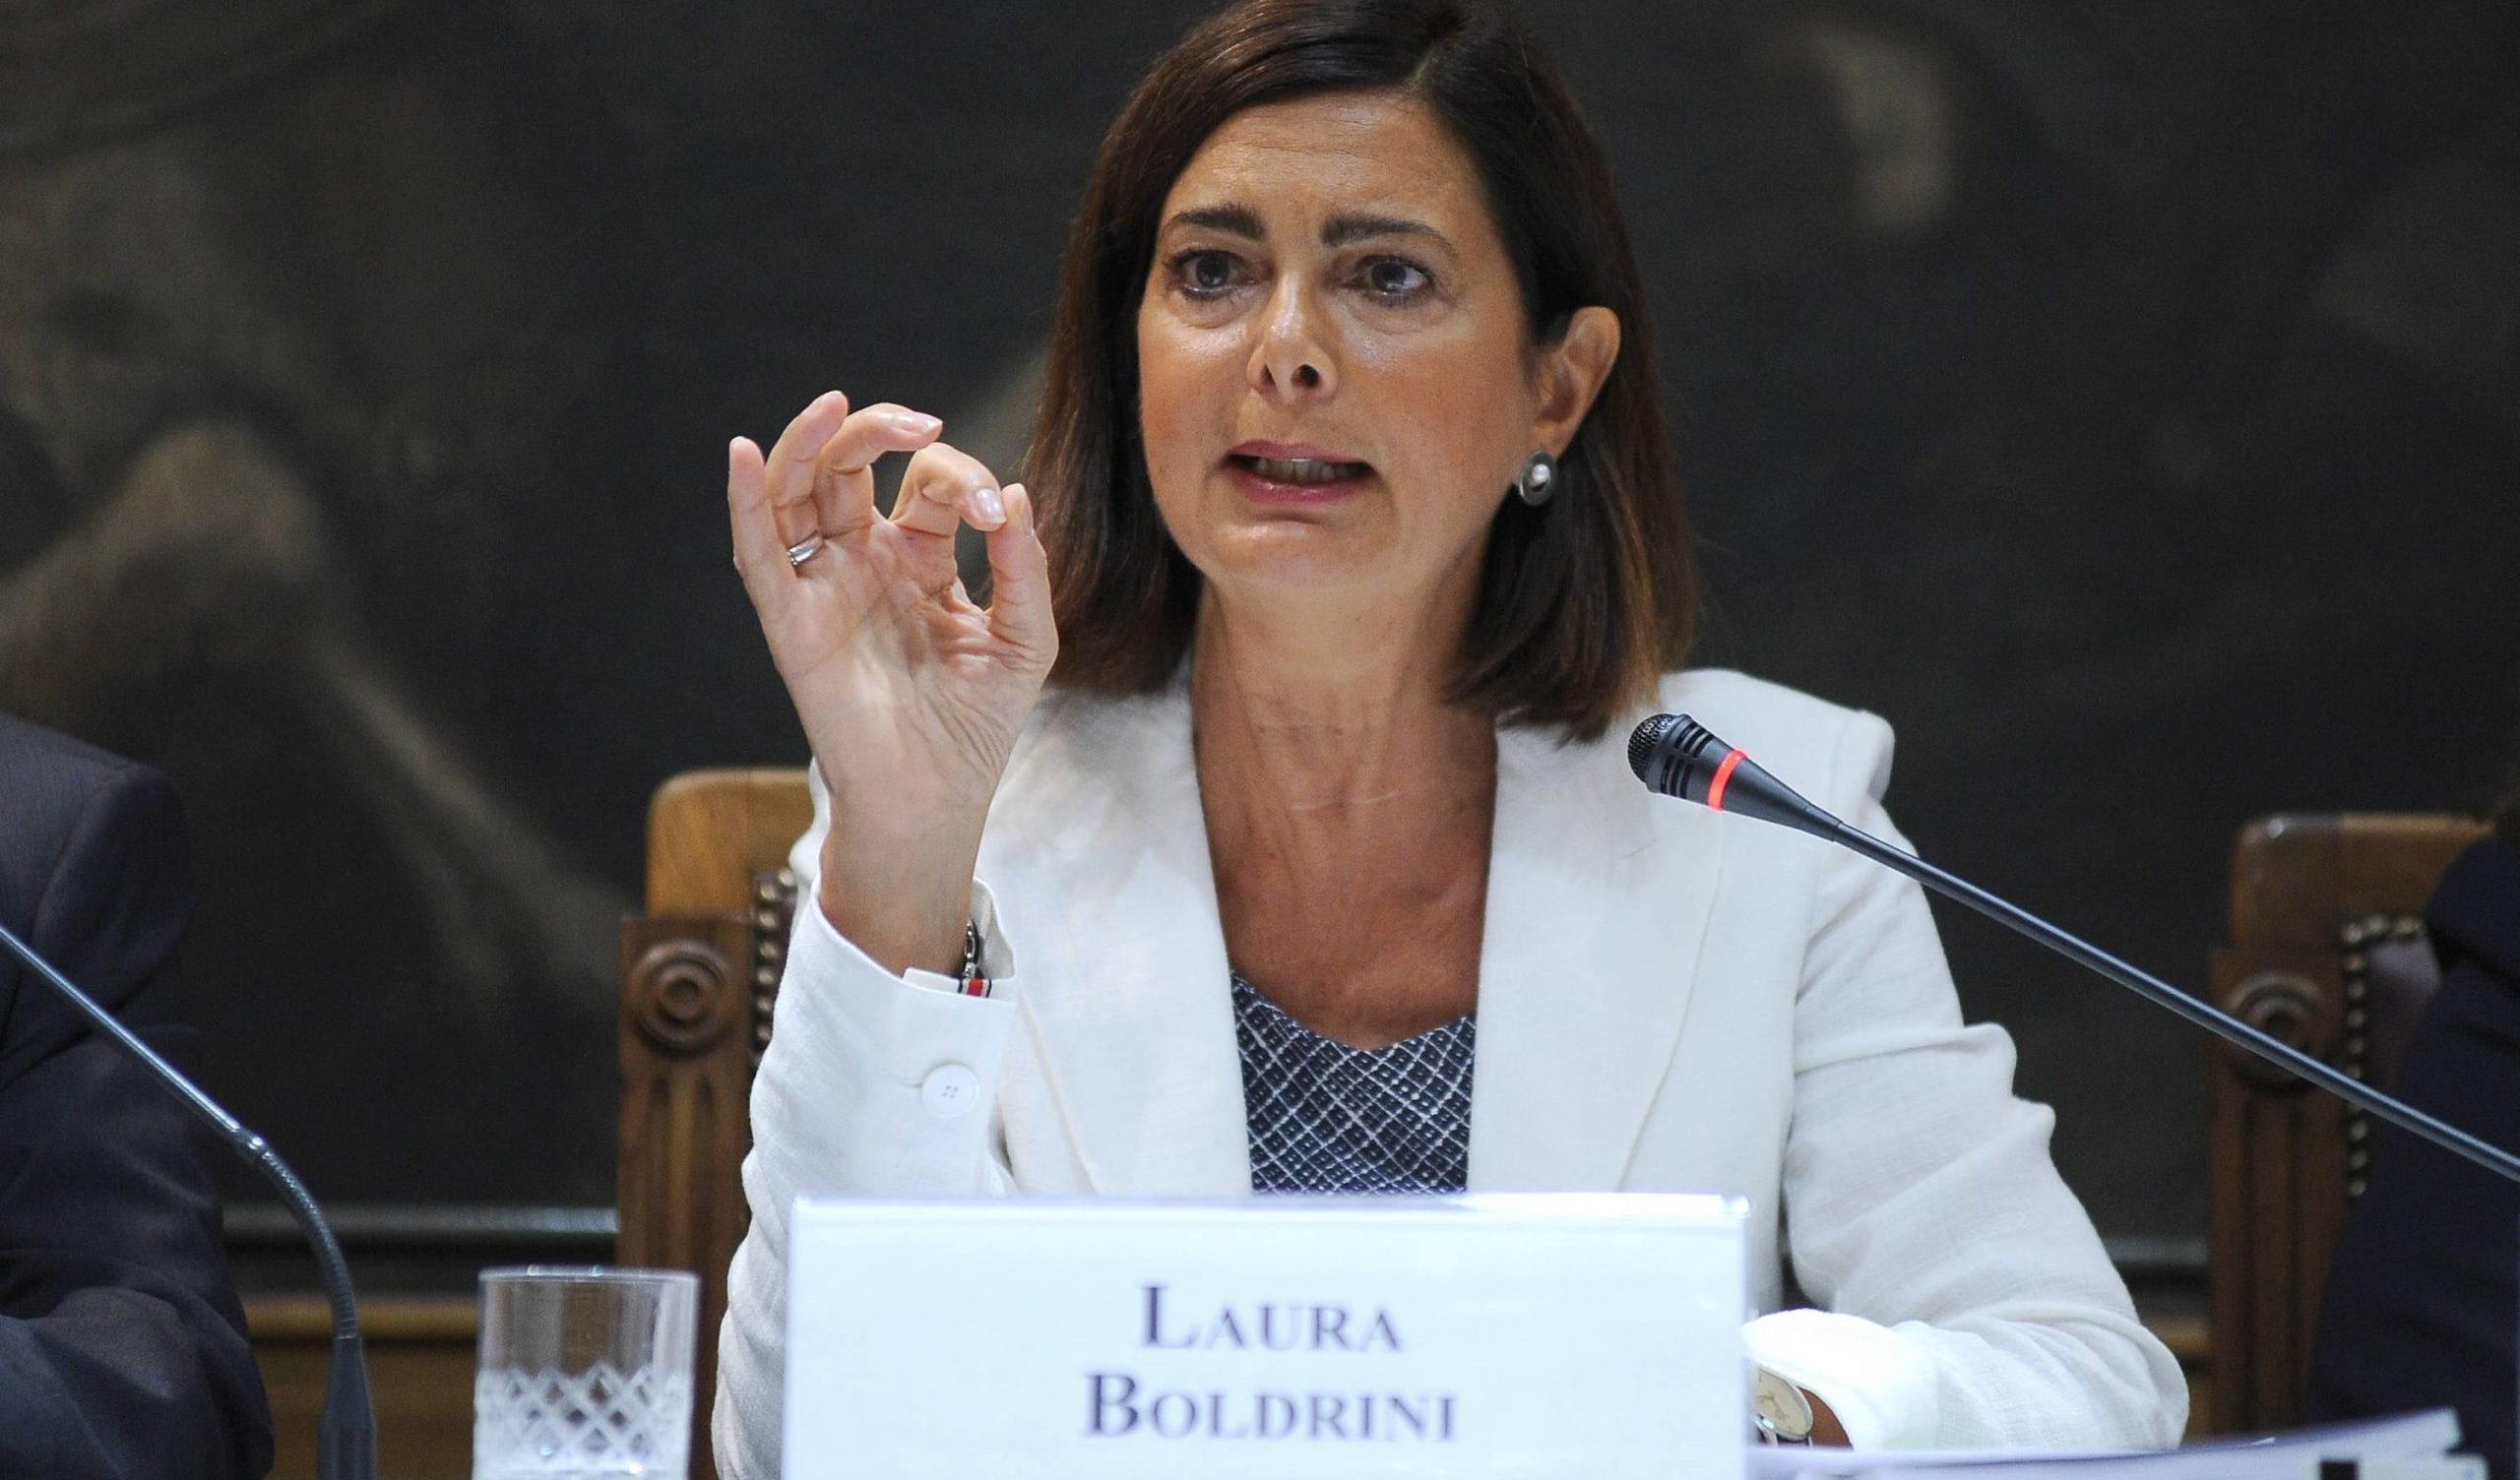 Laura Boldrini al forum del G7 contro le armi nucleari: "L'Italia ripudia la guerra"